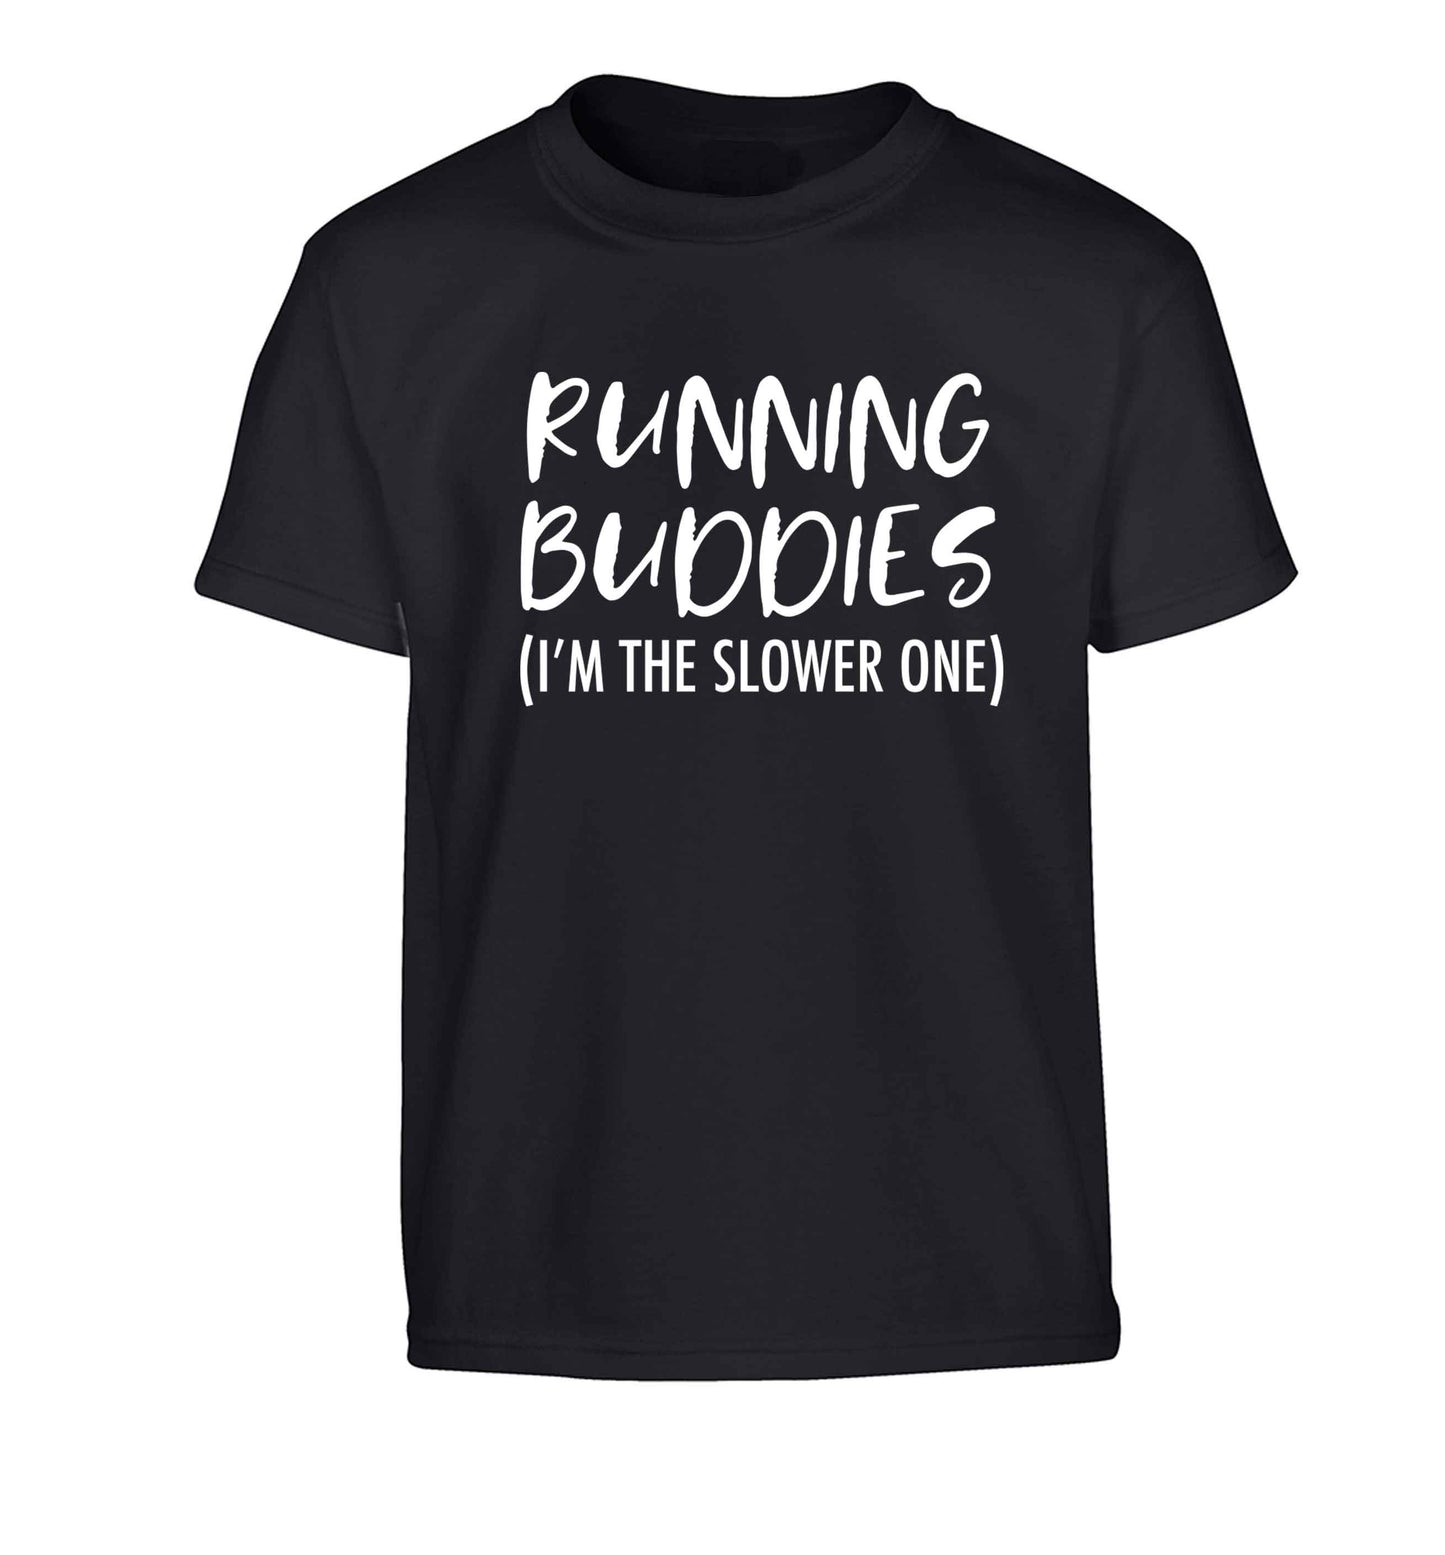 Running buddies (I'm the slower one) Children's black Tshirt 12-13 Years